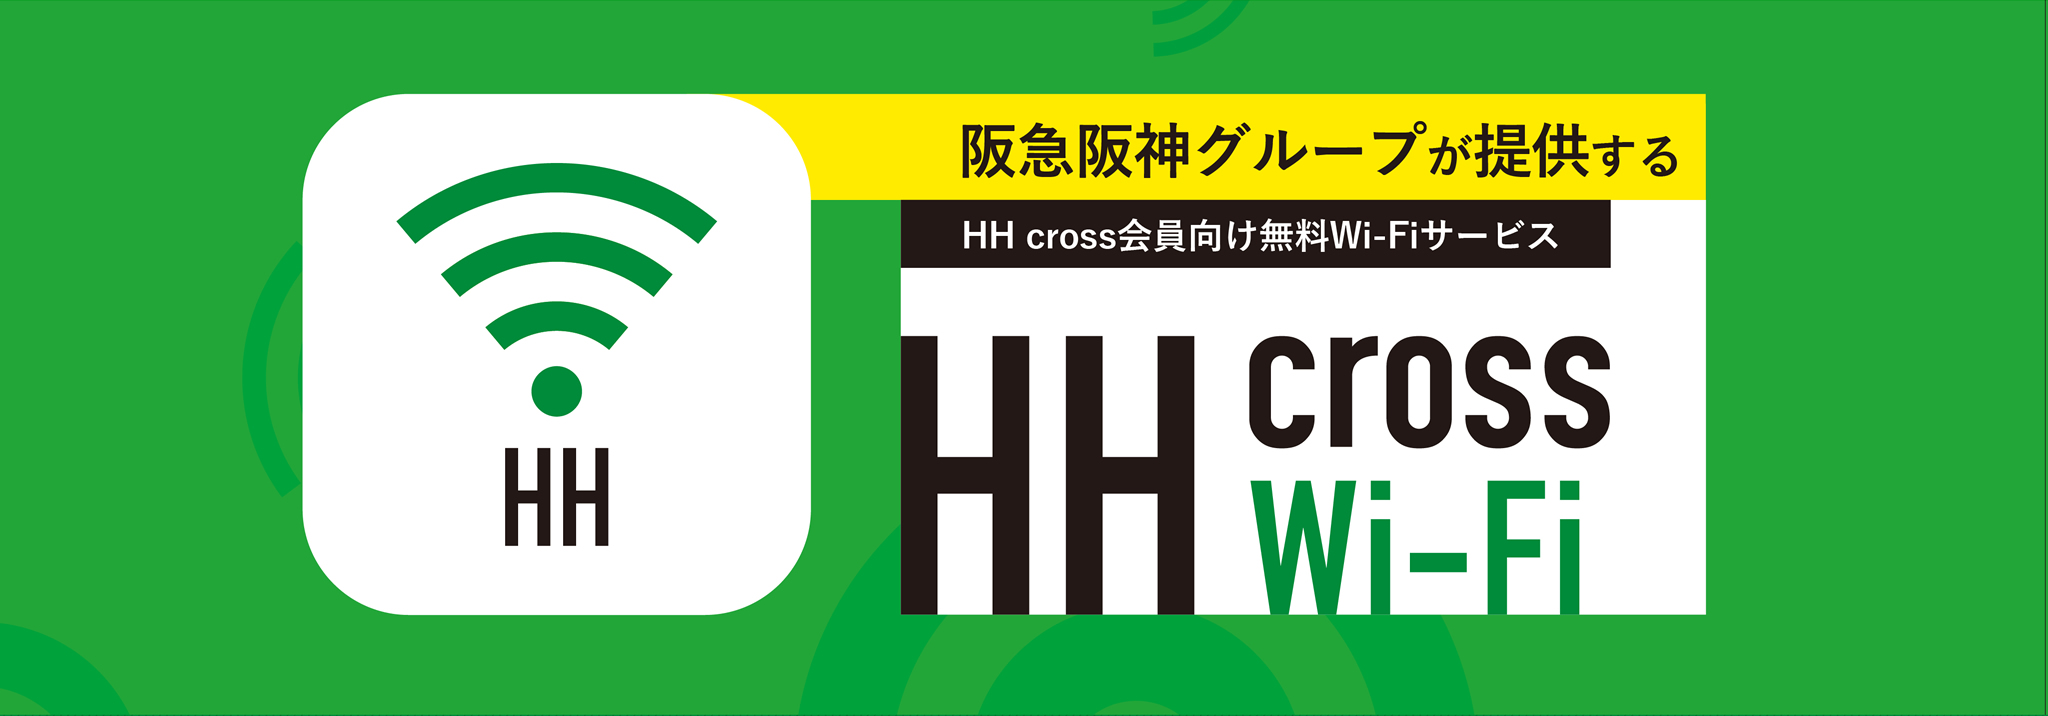 阪急阪神グループが提供する HH cross会員向け無料Wi-Fiサービ